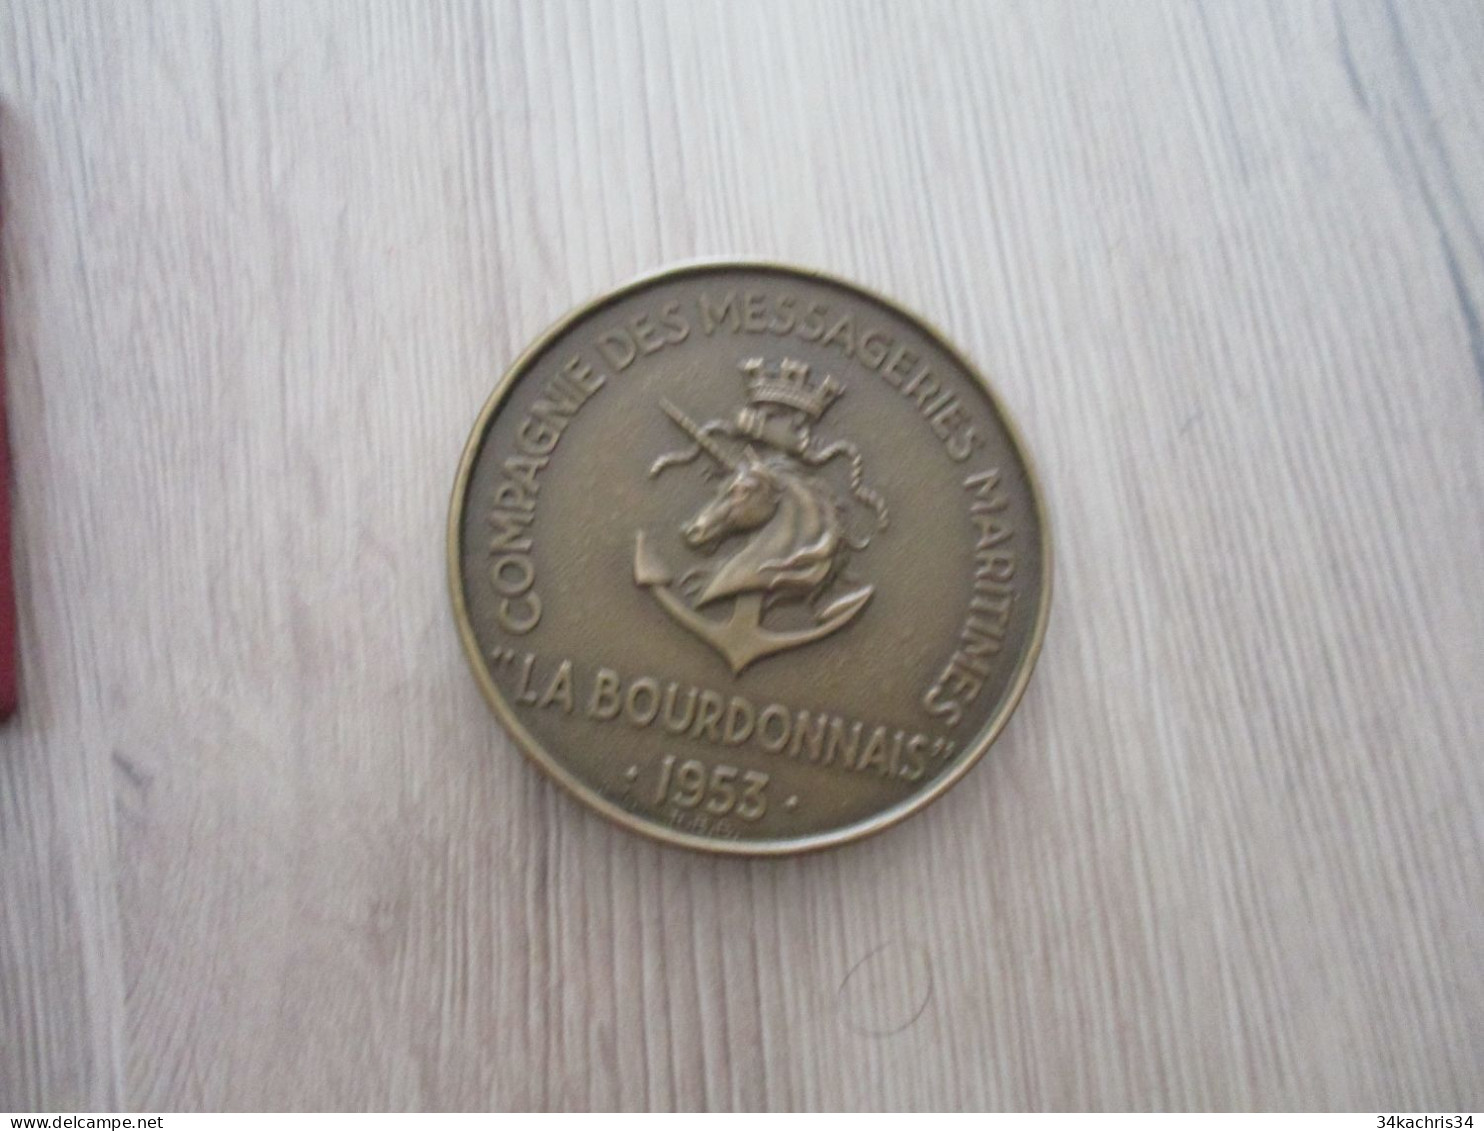 Médaille De Table La Bourdonnais Compagnies Messageries Maritimes 1953 5.5 Diam 100g Environs Dans Sa Boite - Maritime Dekoration